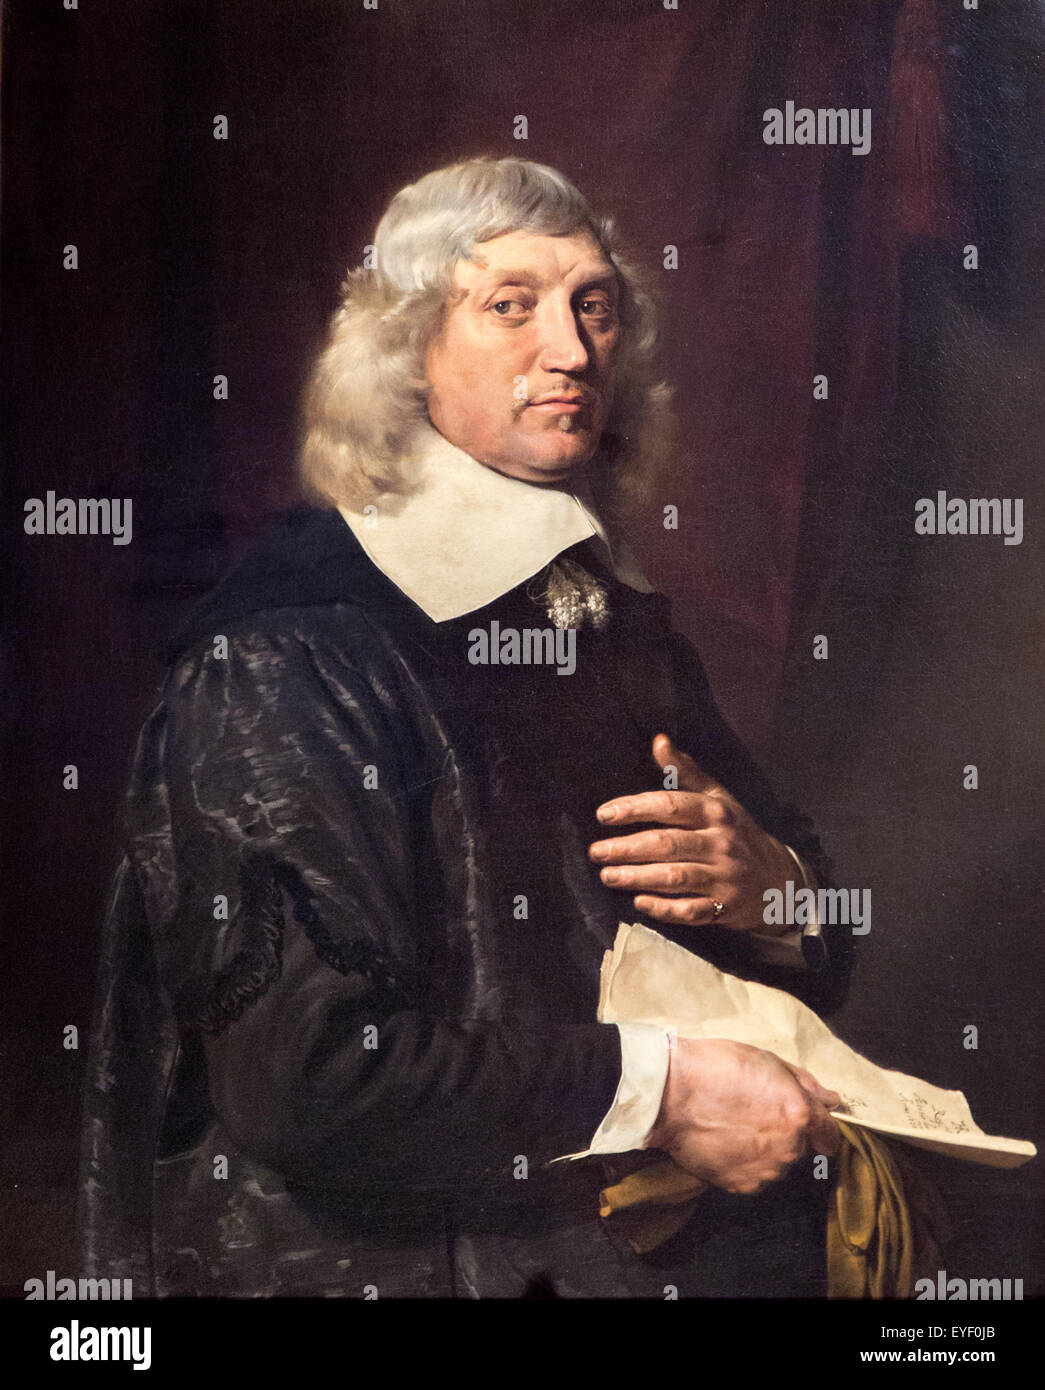 Porträt des Mannes 01.08.2014 - Sammlung des 17. Jahrhunderts Stockfoto